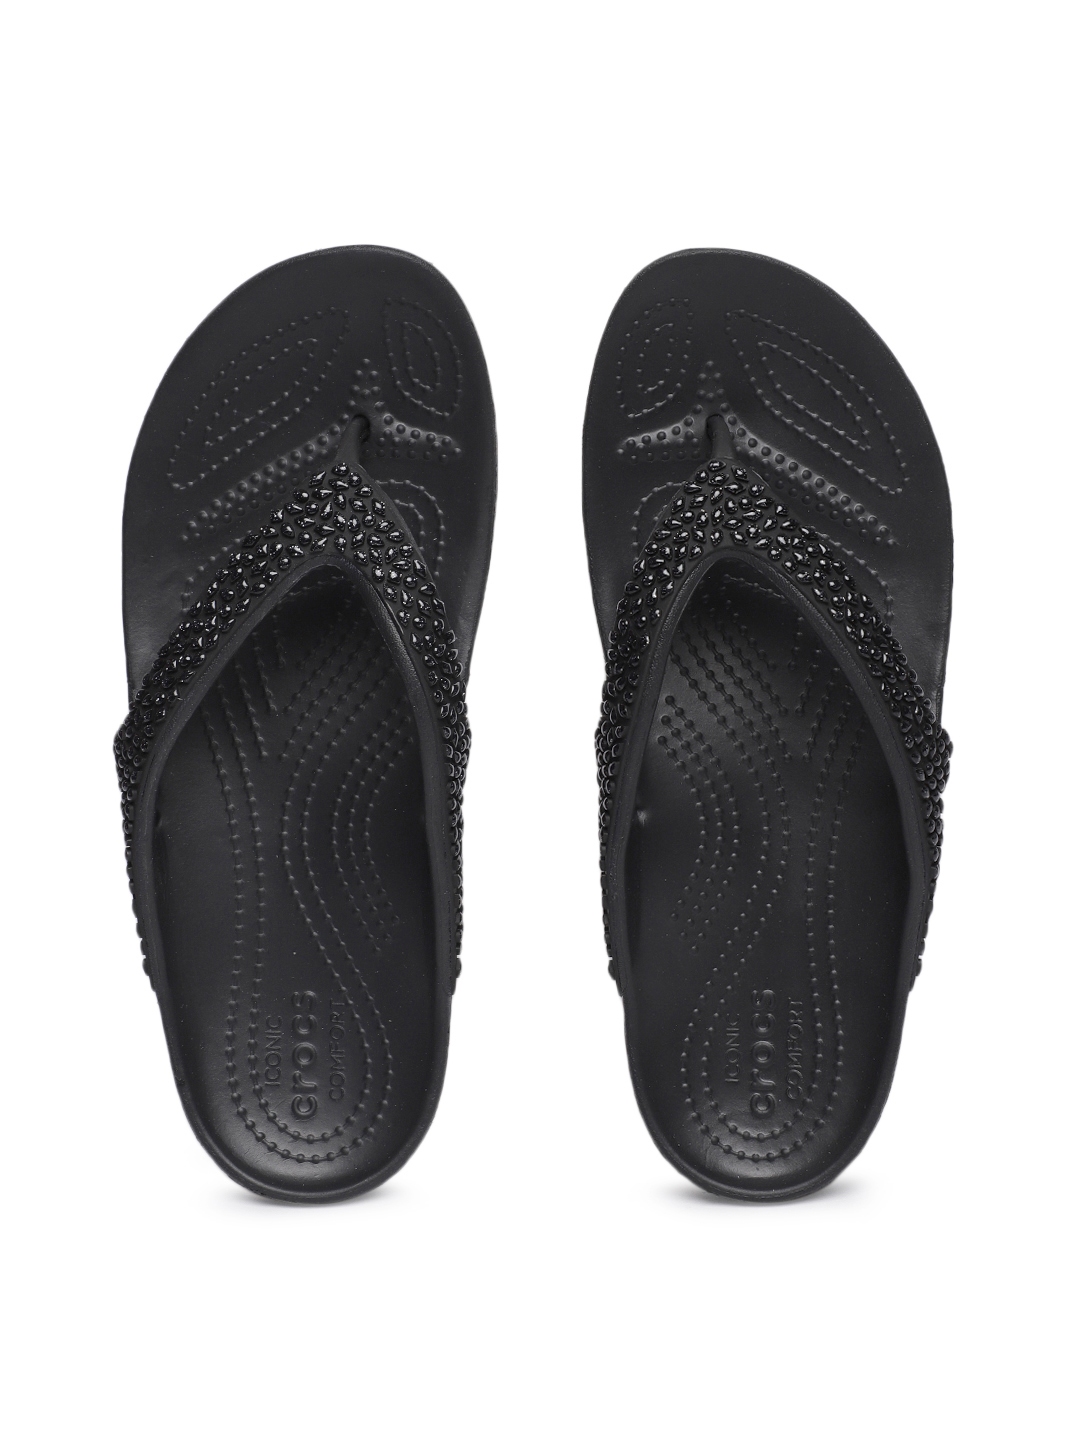 Buy Crocs Women Black Embellished Thong Flip Flops - Flip Flops for ...